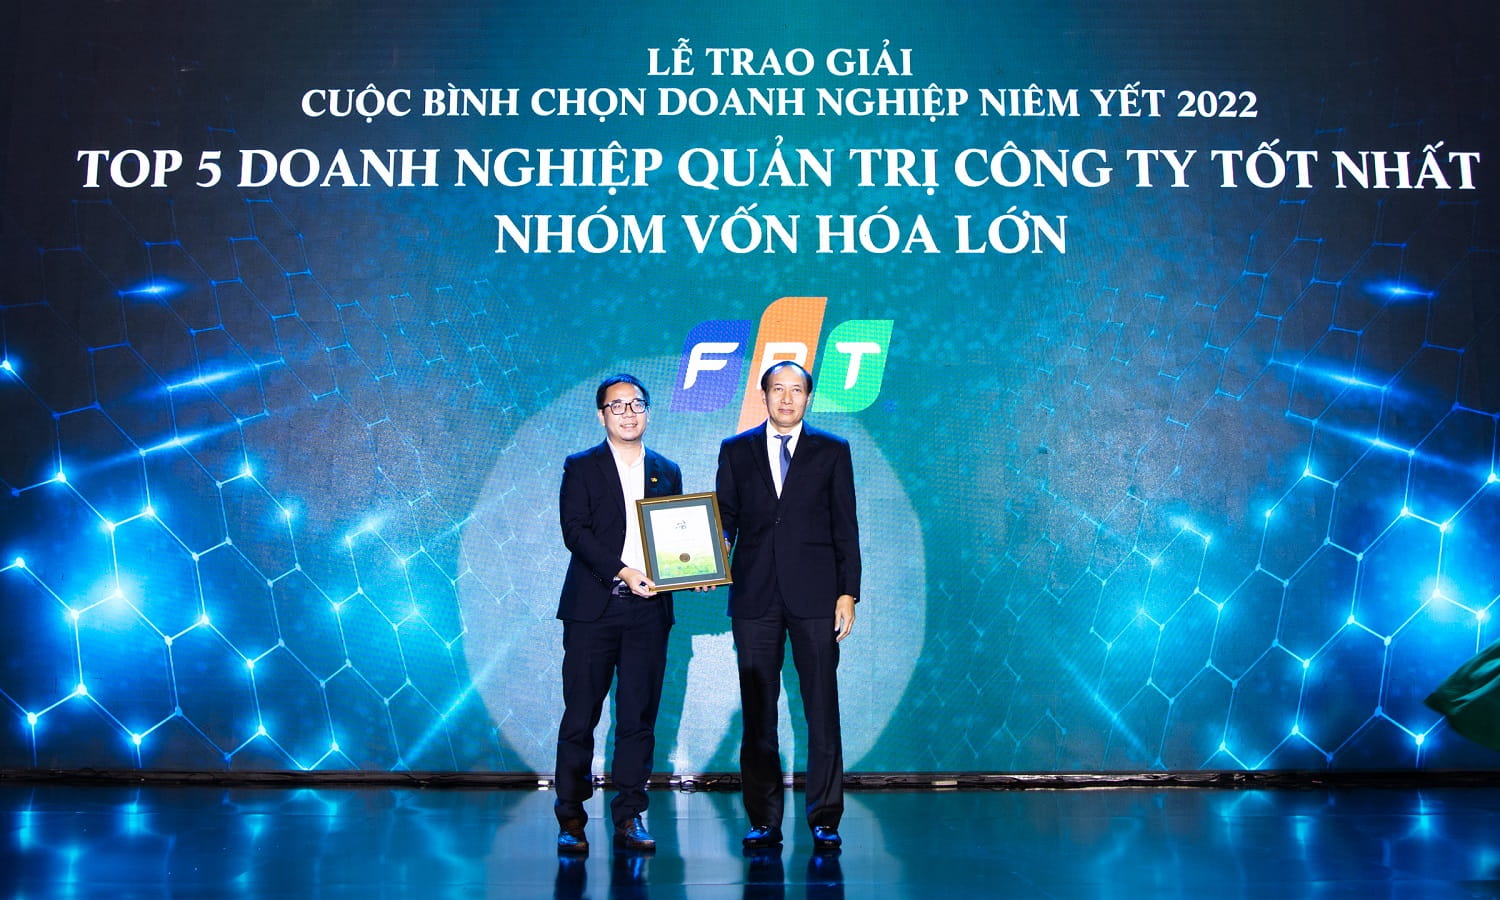 Đại diện FPT, ông Võ Đặng Phát Giám đốc Marketing Truyền thông nhận giải Top 5 Quản trị công ty xuất sắc